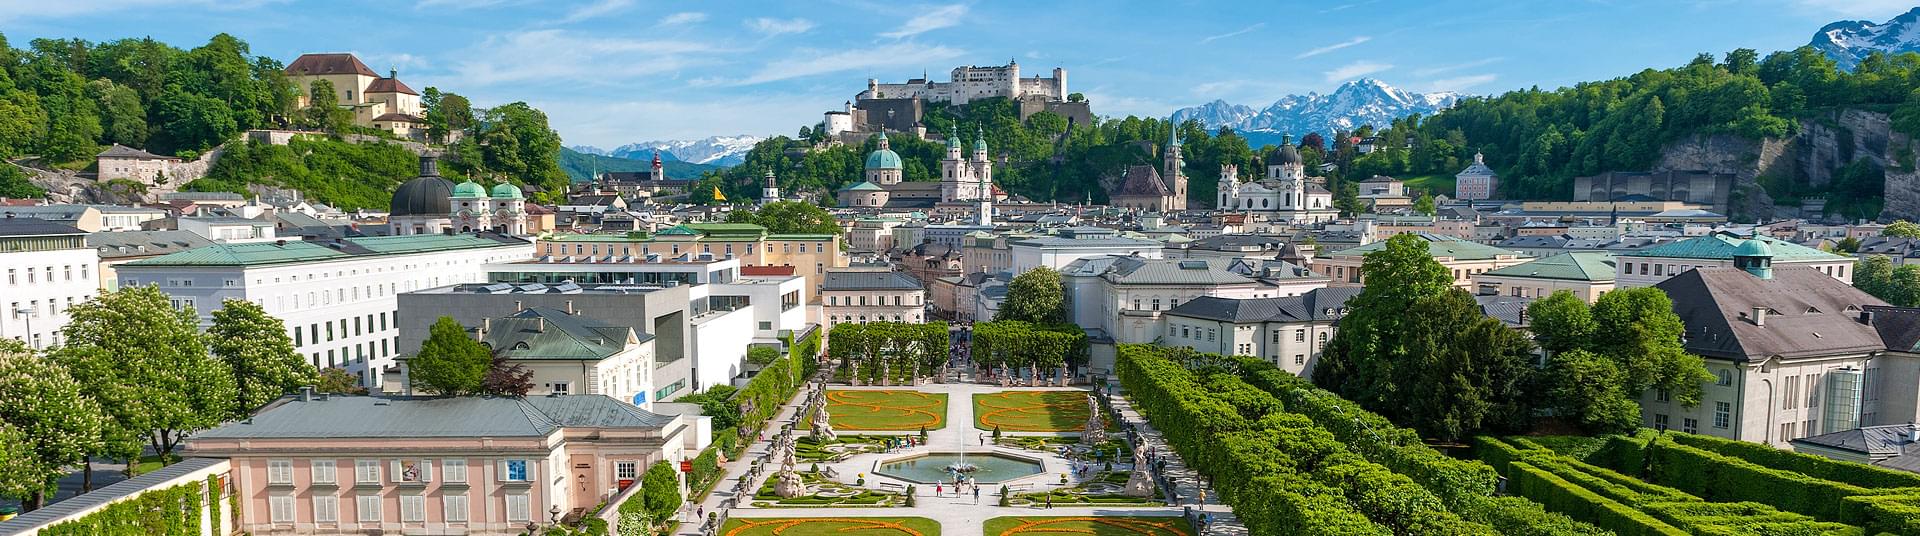 Stadt Salzburg - Blick auf den Mirabellgarten & die Festung